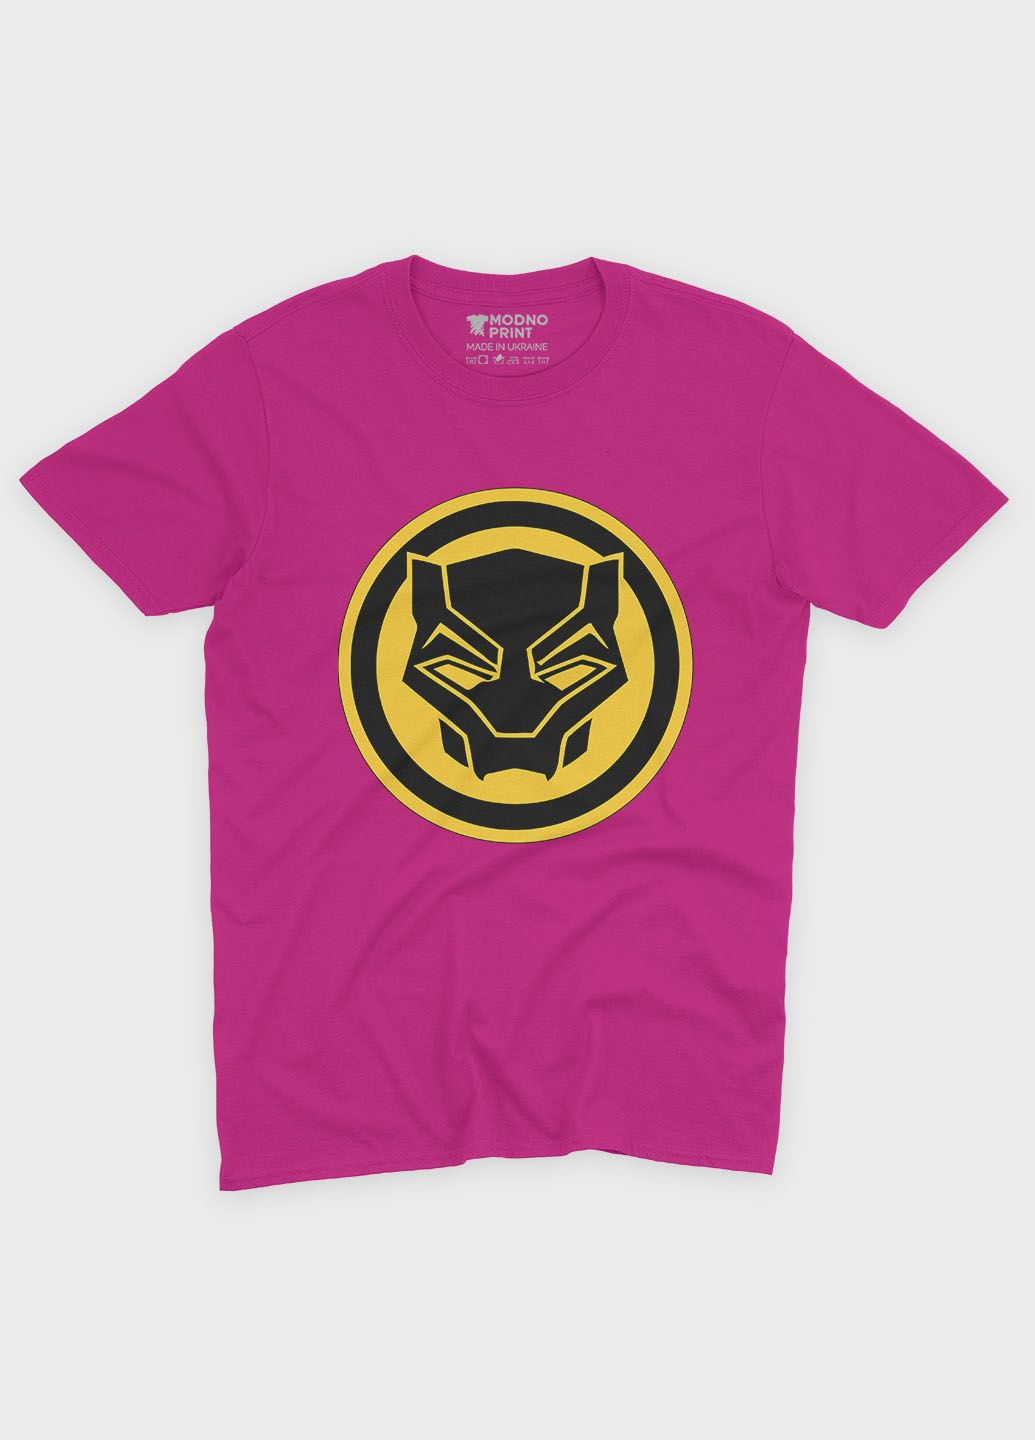 Розовая демисезонная футболка для мальчика с принтом супергероя - черная пантера (ts001-1-fuxj-006-027-004-b) Modno